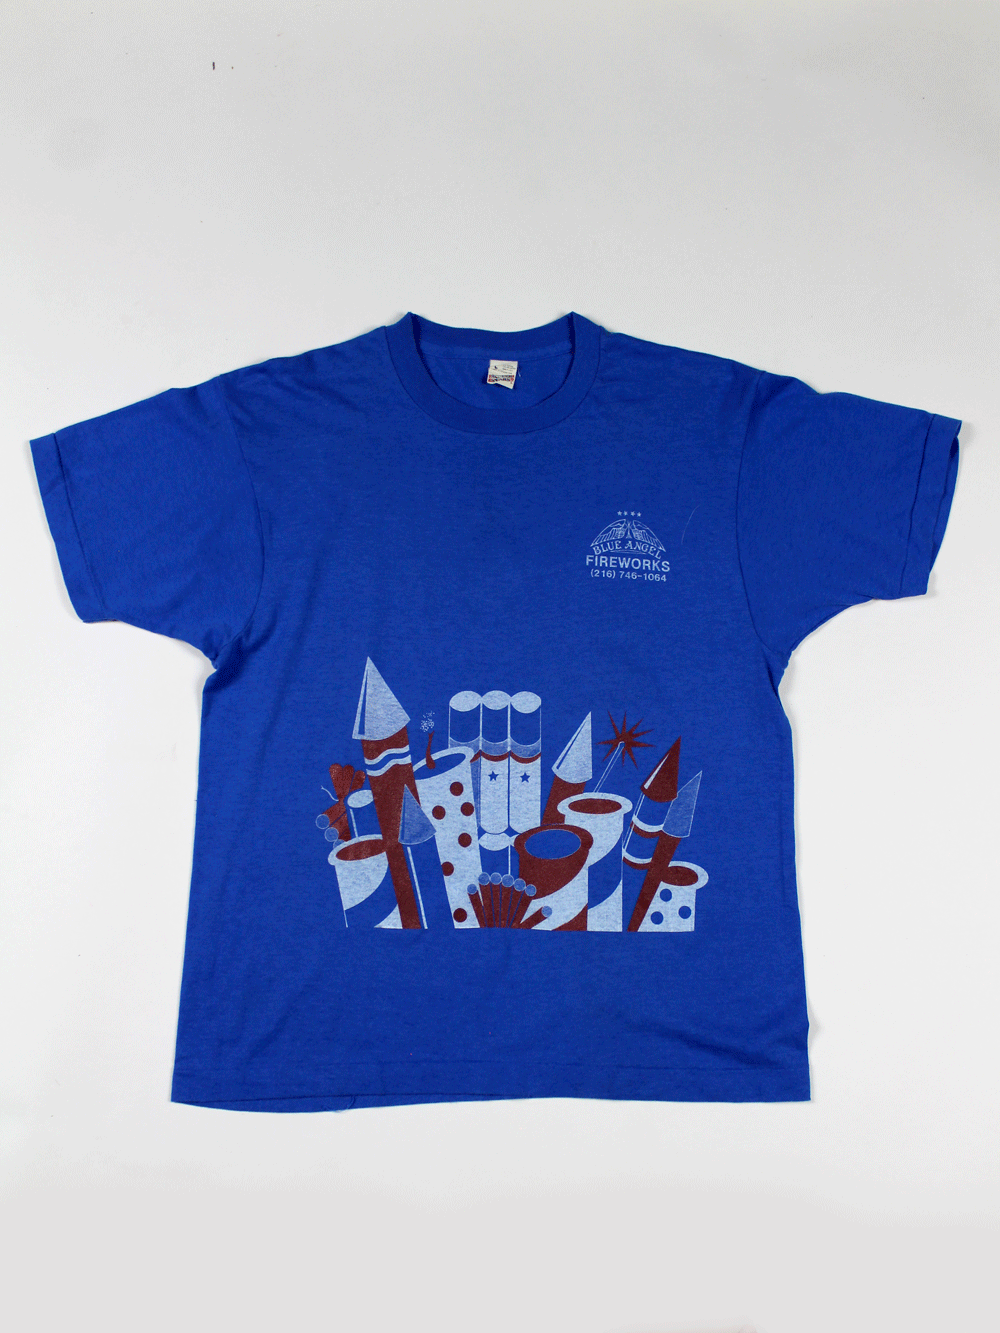 Blue Angel Fireworks 80's Vintage T-shirt